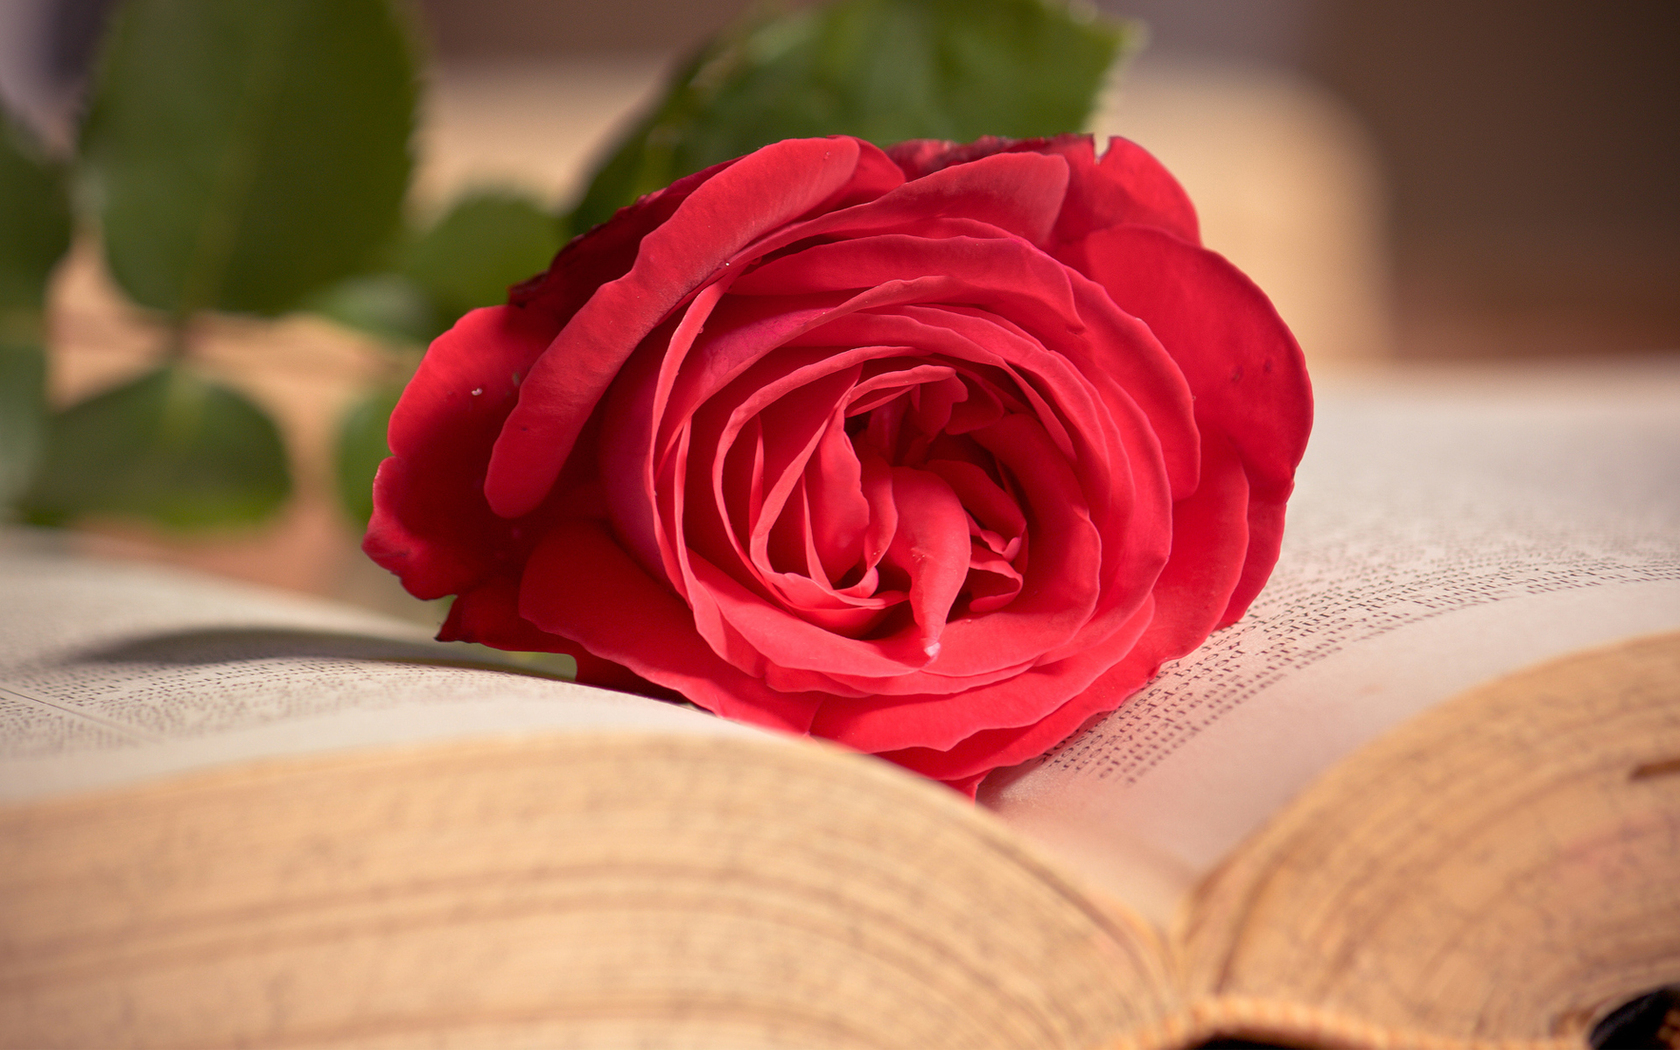  Цветы роза, красная, розовая, книга, цветок, макро картинка, обои рабочий стол